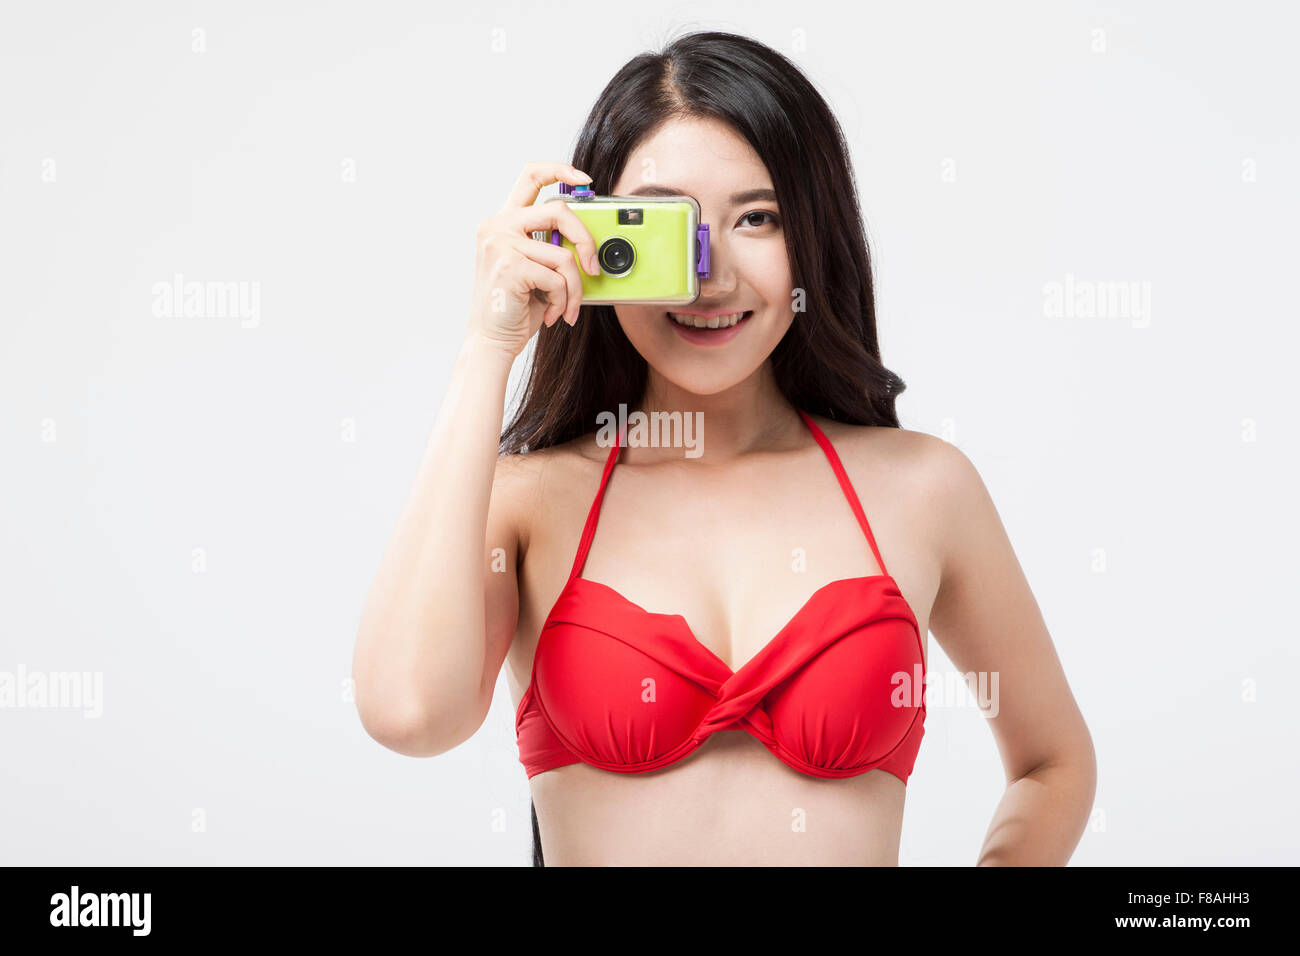 Asiatische Frau im roten Bikini-Oberteil mit einer Kamera fotografieren Stockfoto